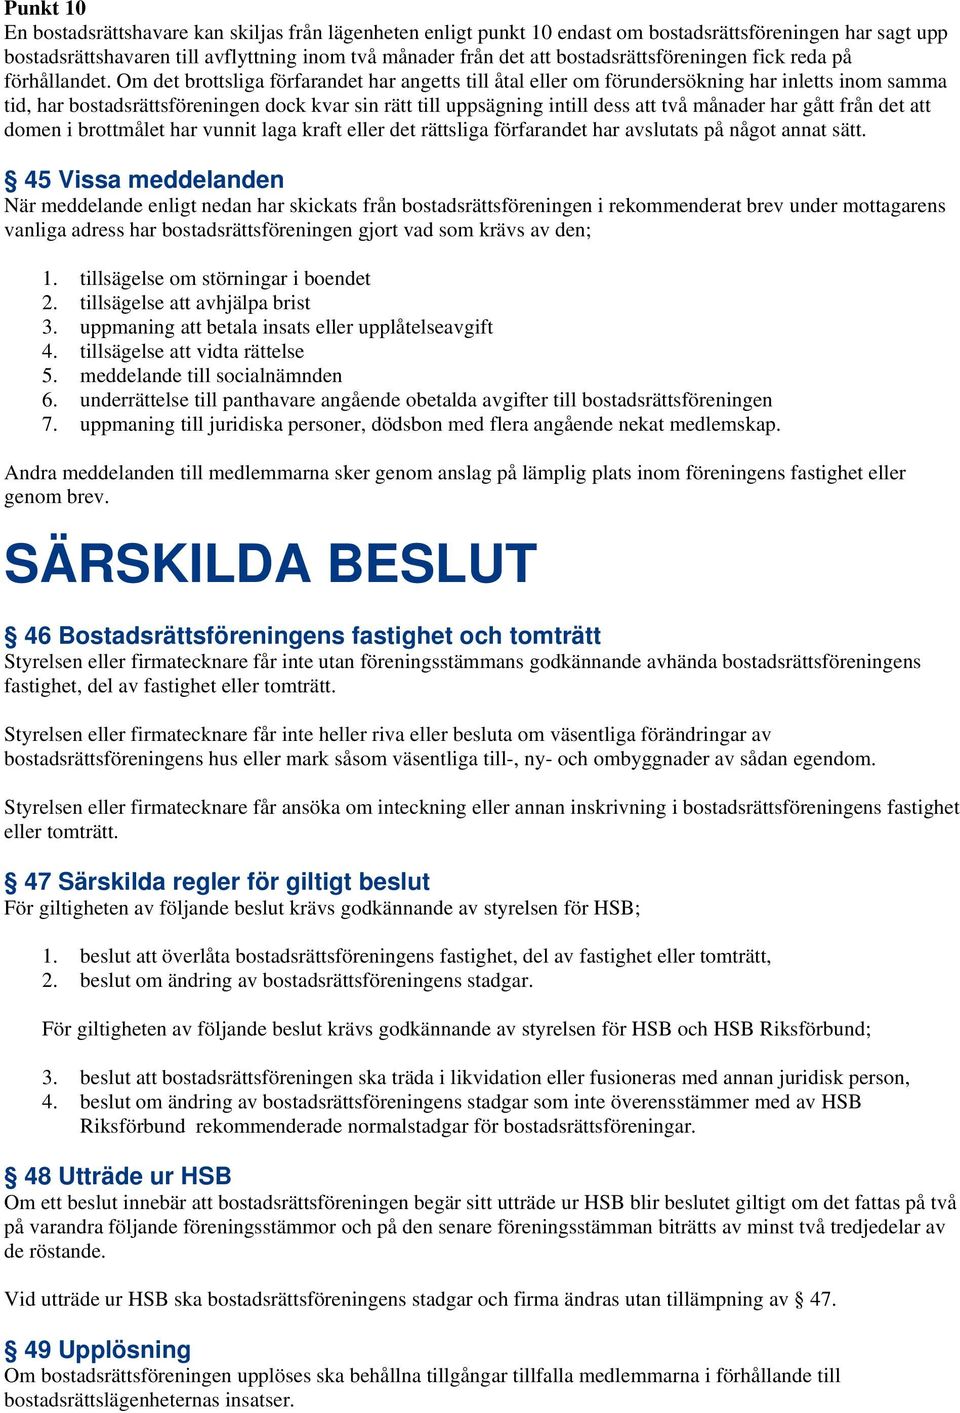 KALLELSE. Medlemmar i HSB:s bostadsrättsförening Snösätra nr 229 i  Stockholm kallas härmed till: ORDINARIE FÖRENINGSSTÄMMA - PDF Free Download